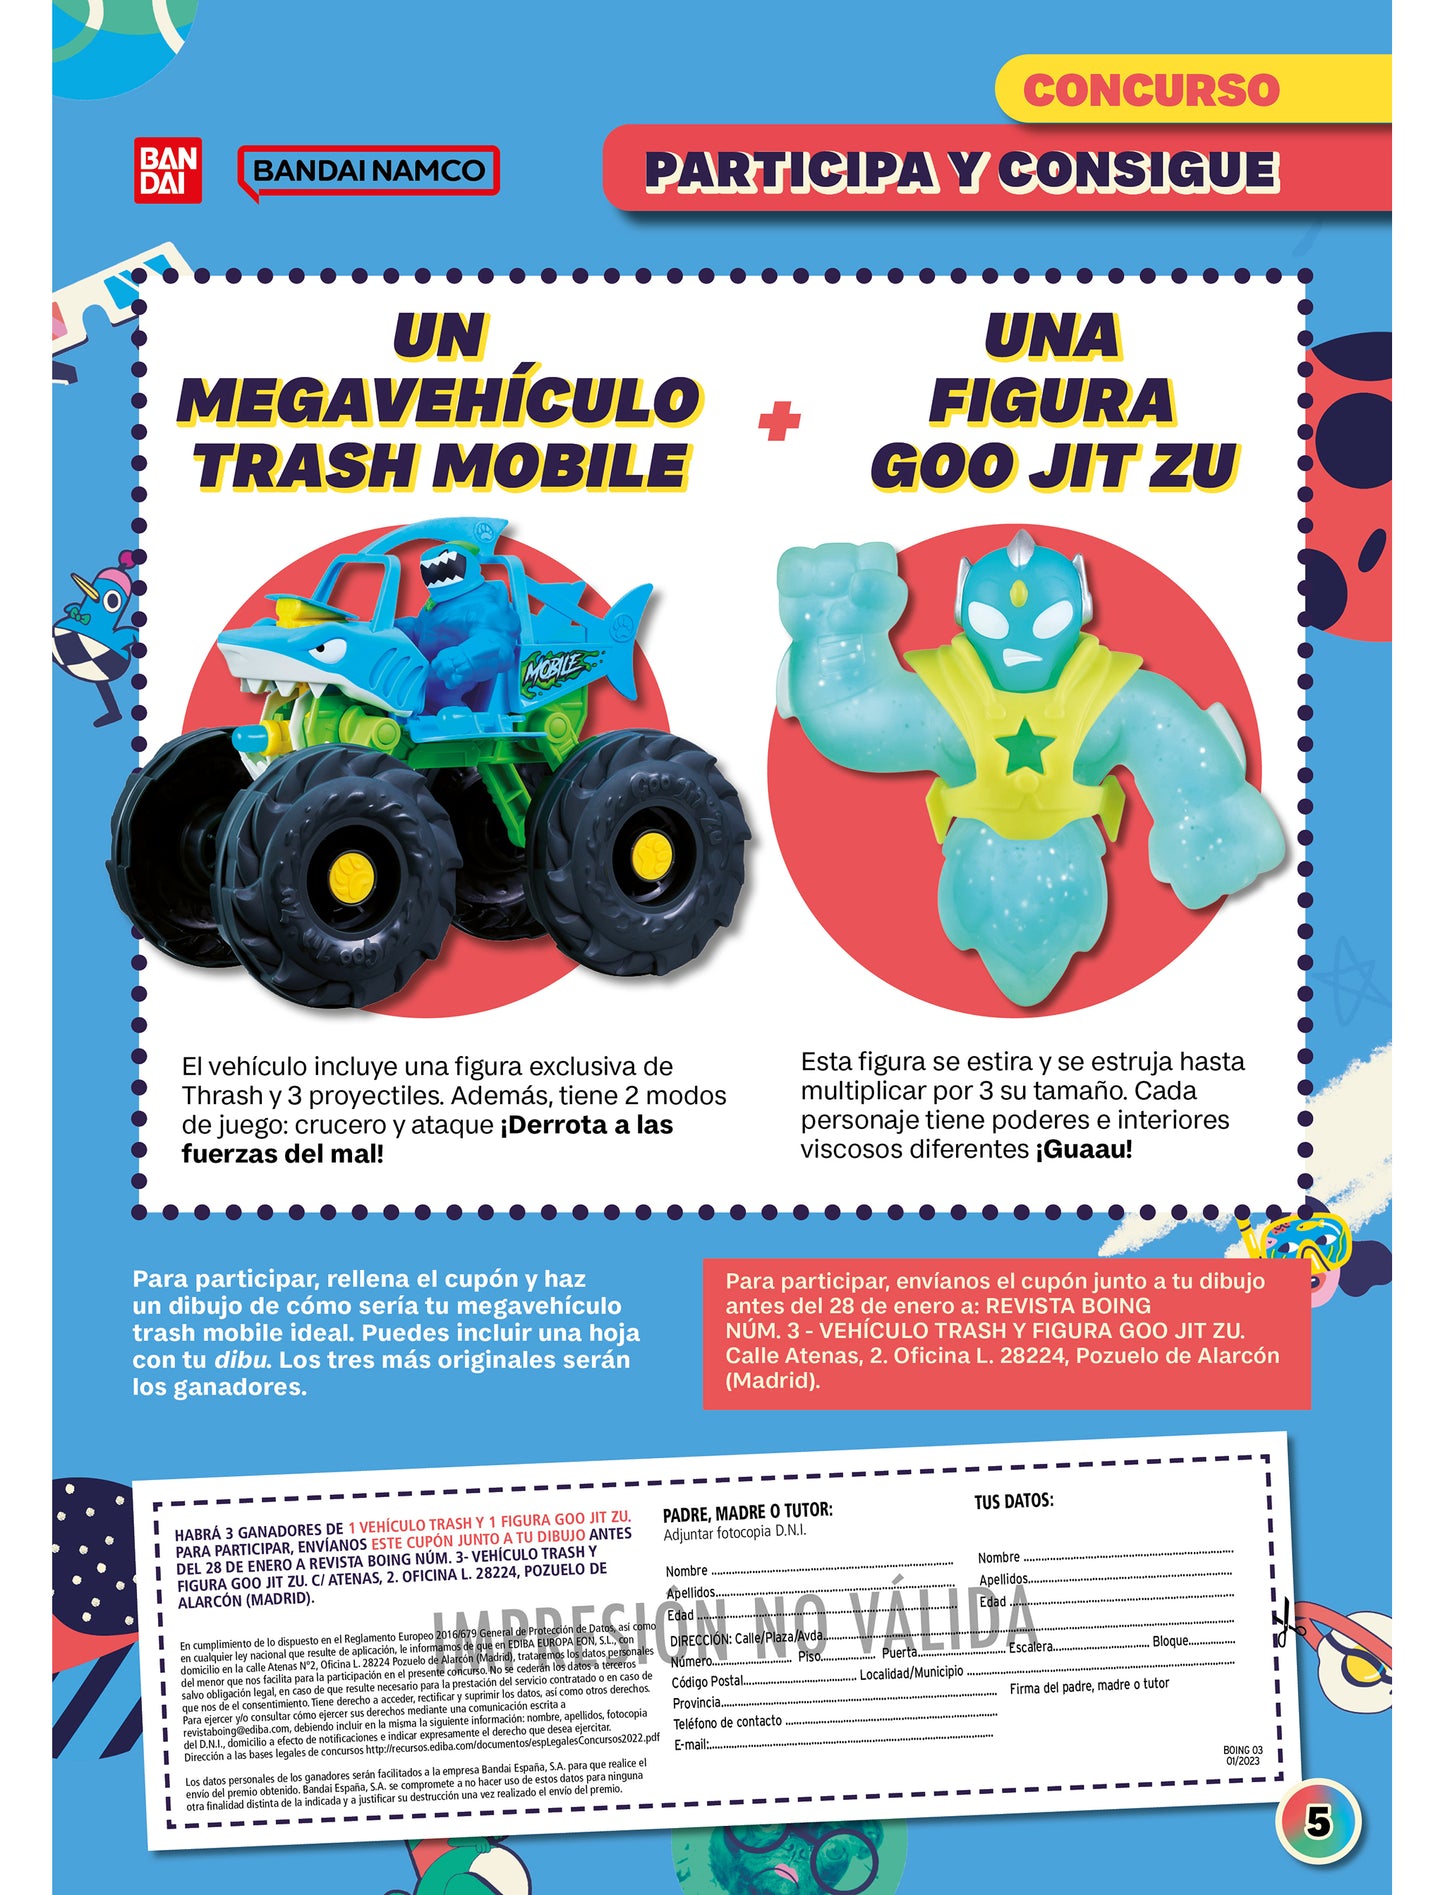 Concurso Vehículo Trash y Figura Goo Jit zu